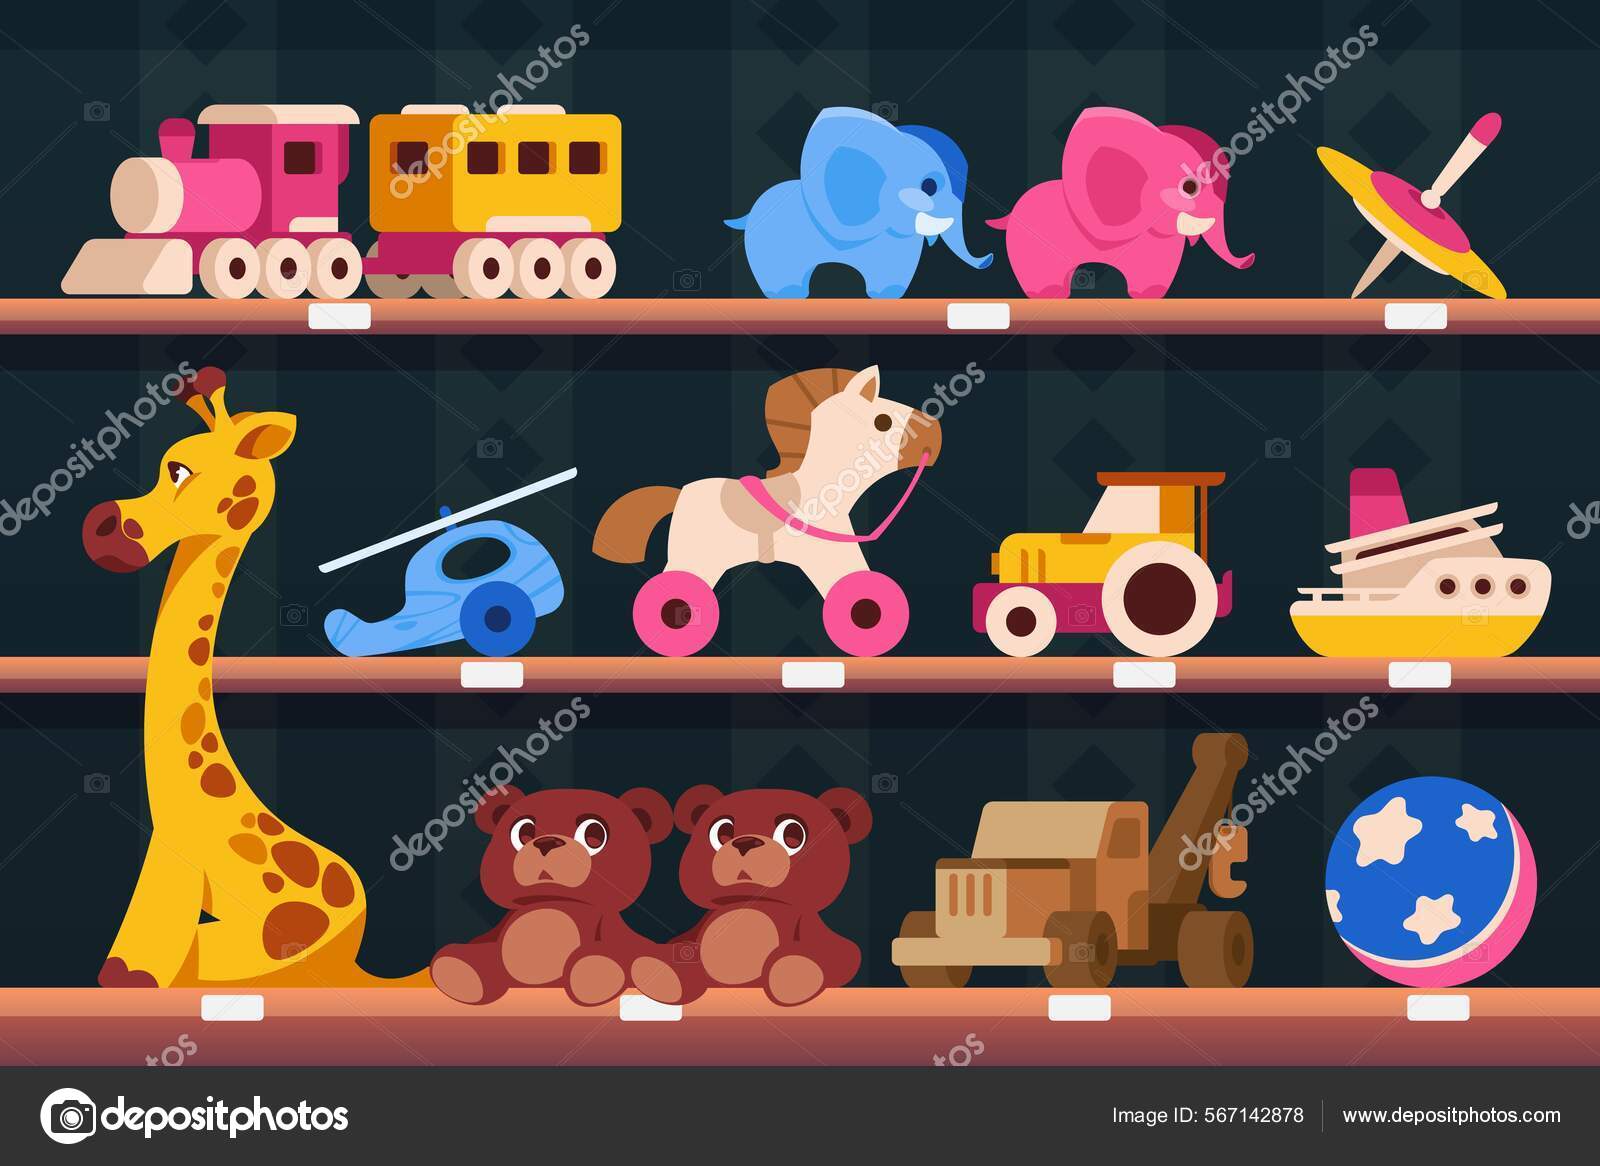 O trator de brinquedo. Carros no parquinho. Desenho animado para crianças  em português Brasil. 